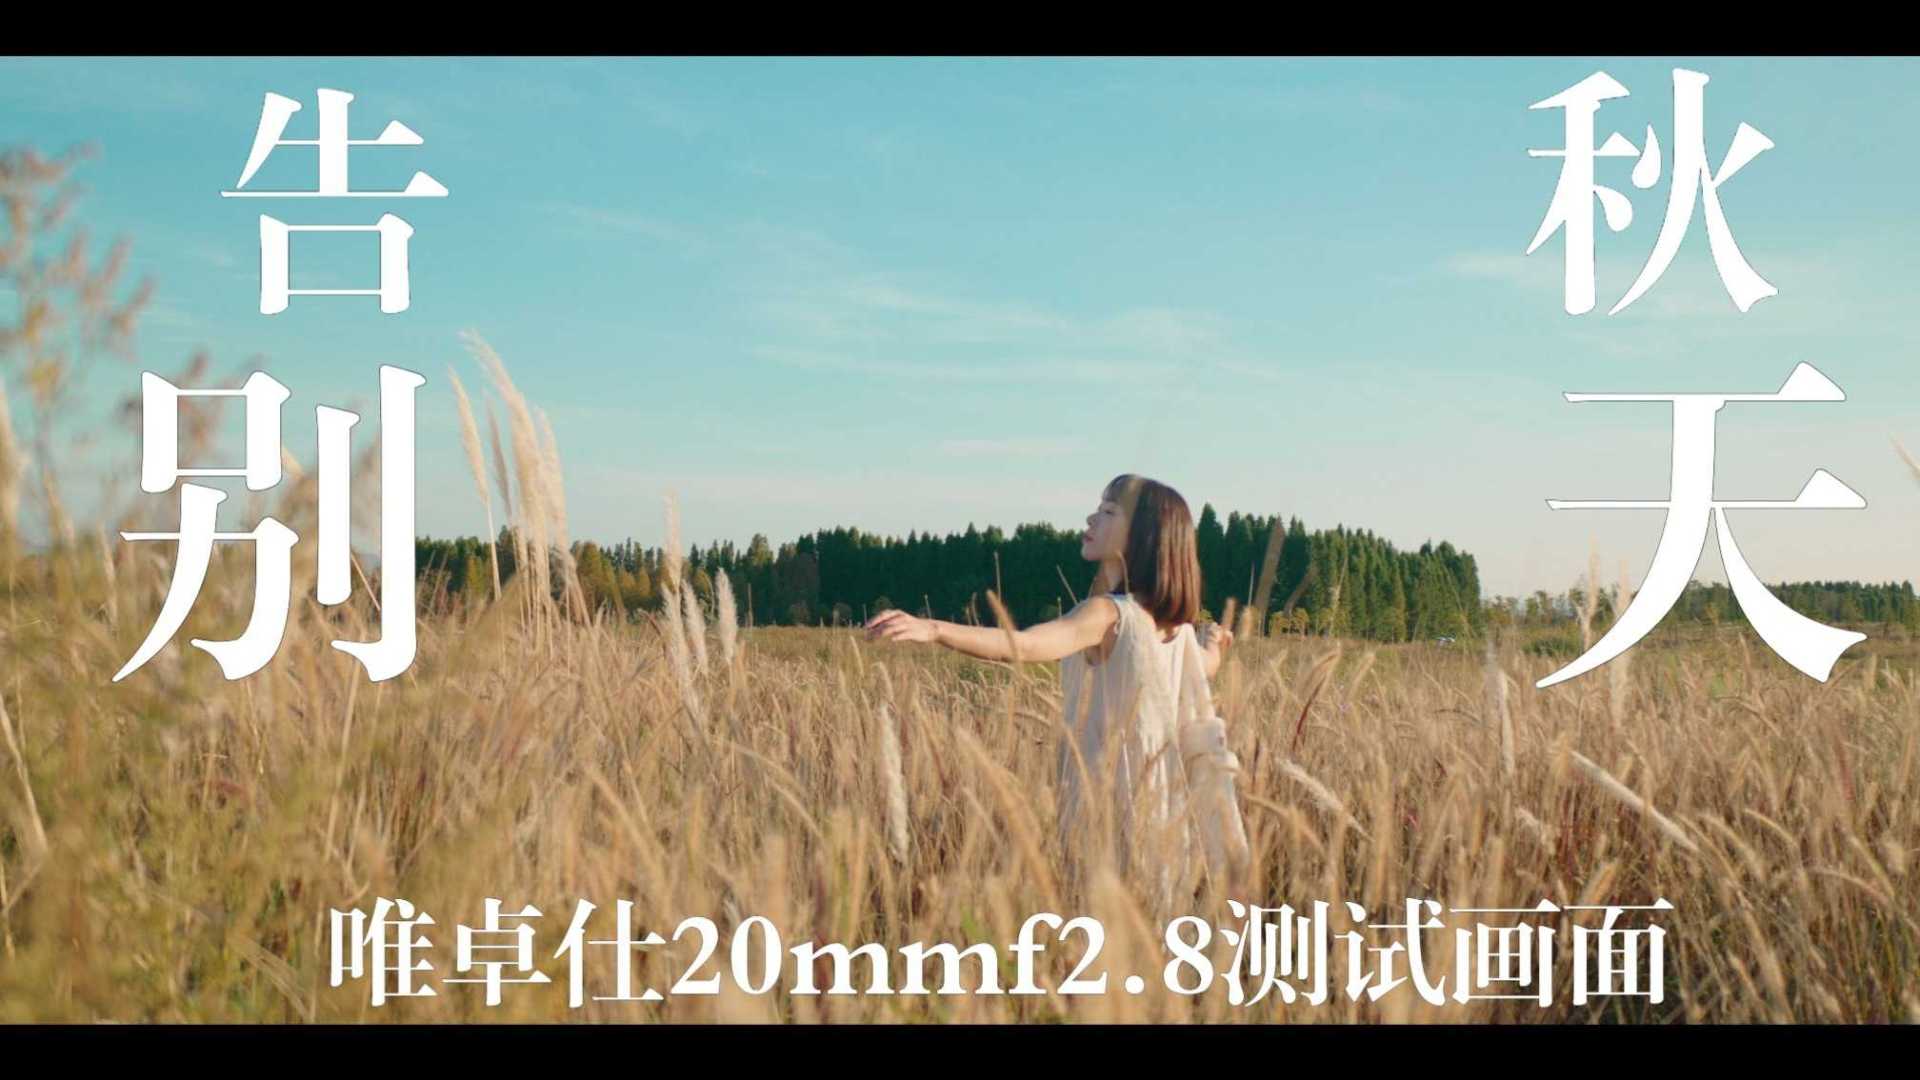 《回忆会记得秋天》唯卓仕20mmf2.8 测试短片